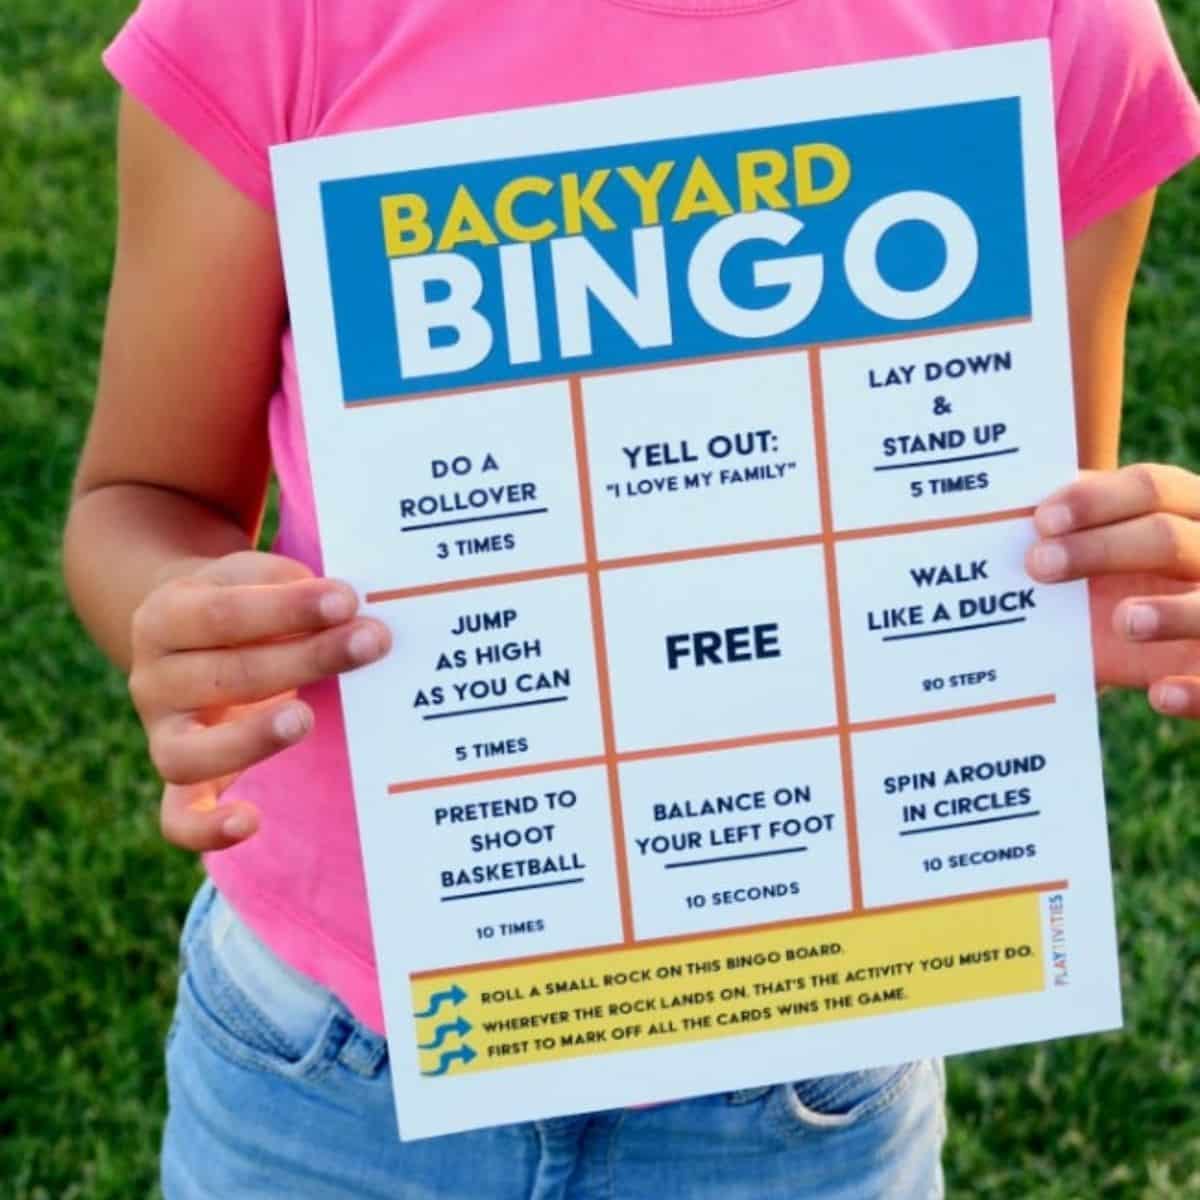 Girl in a pink t-shirt holding a backyard bingo game.